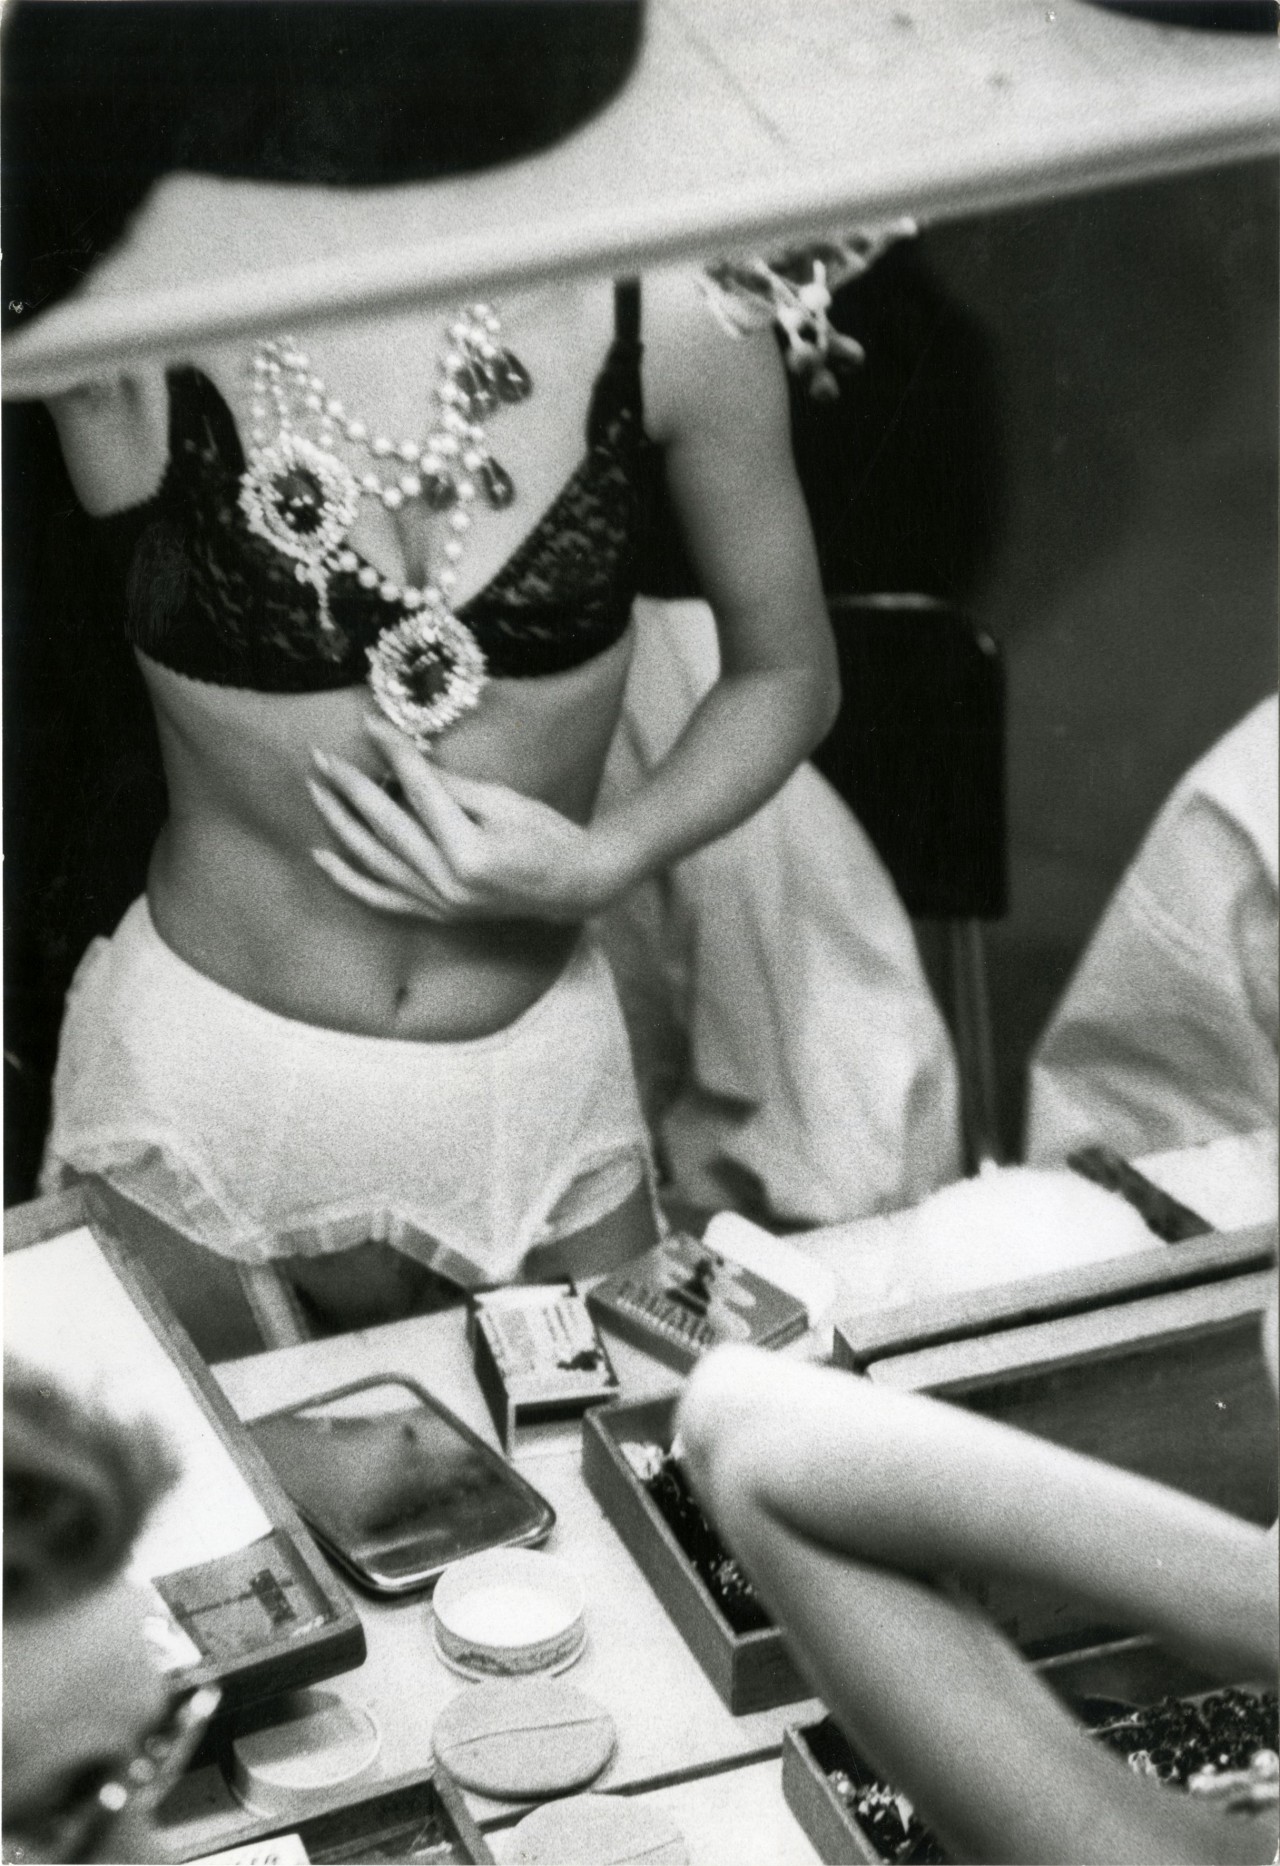 Модель за кулисами готовится к показу Диор. Париж, 1960 год. Фотограф Жан-Филипп Шарбонье